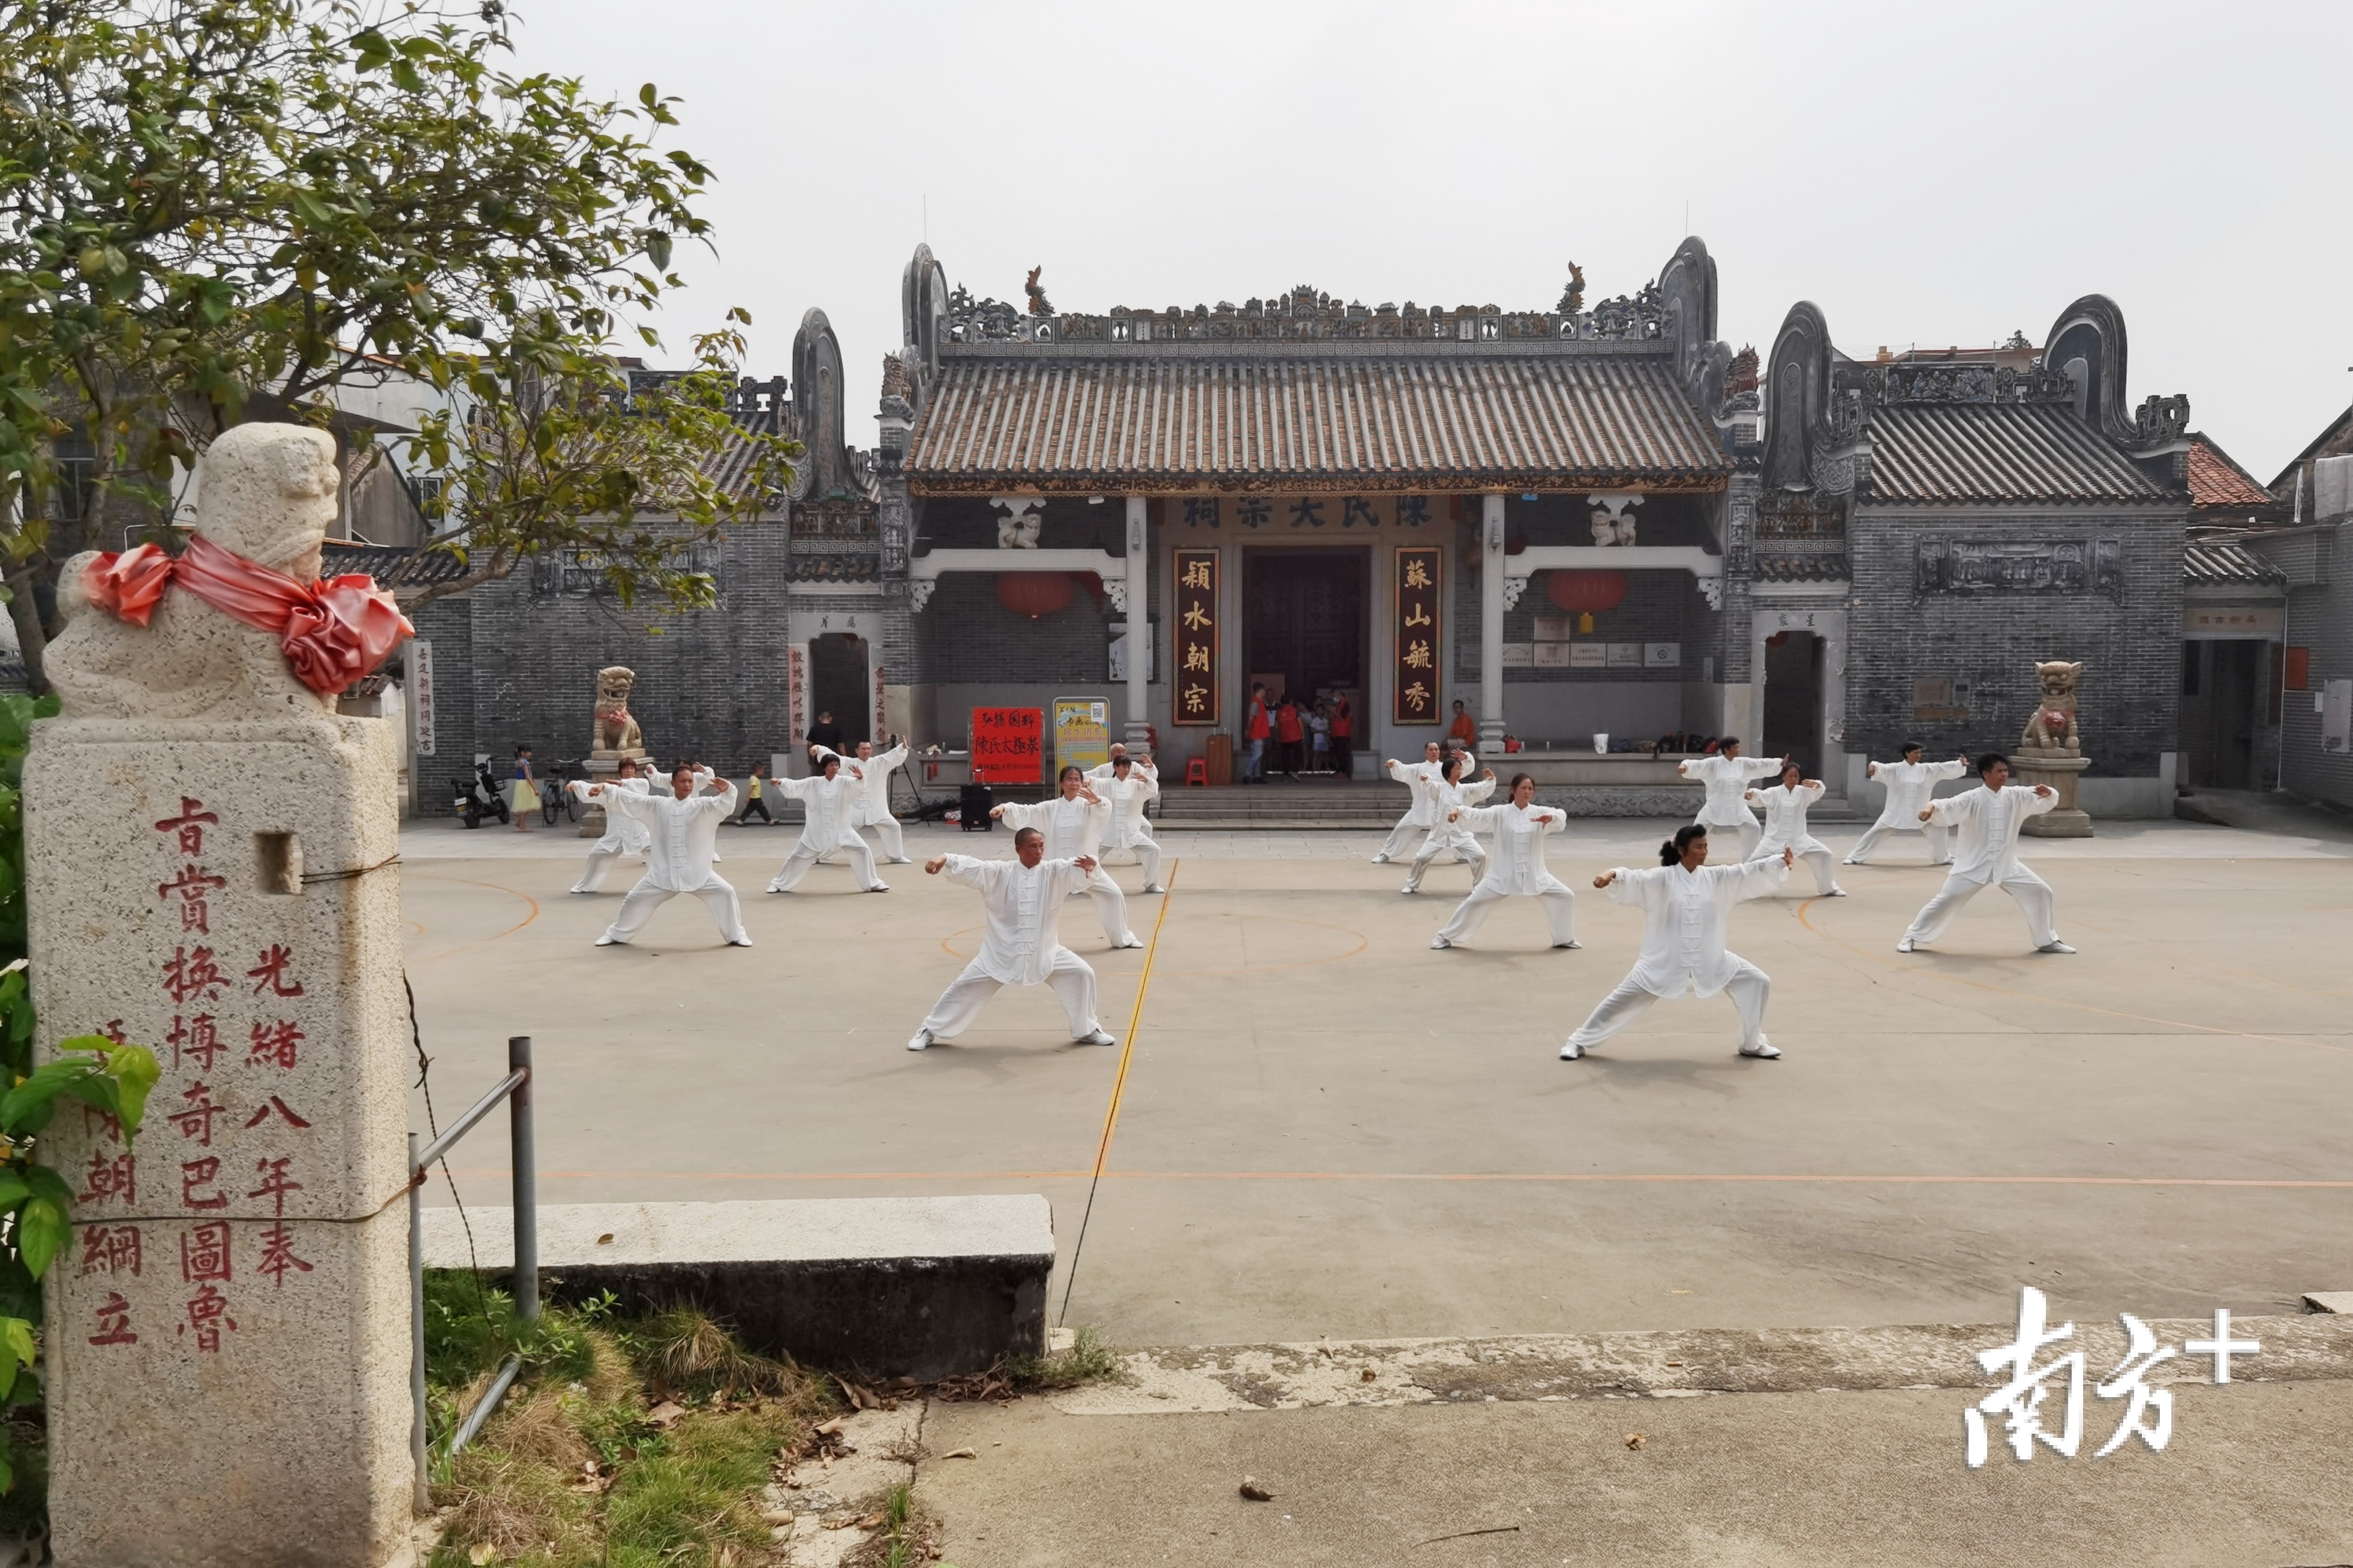 武术爱好者在陈氏大宗祠活动广场打太极。张秀蓝 摄